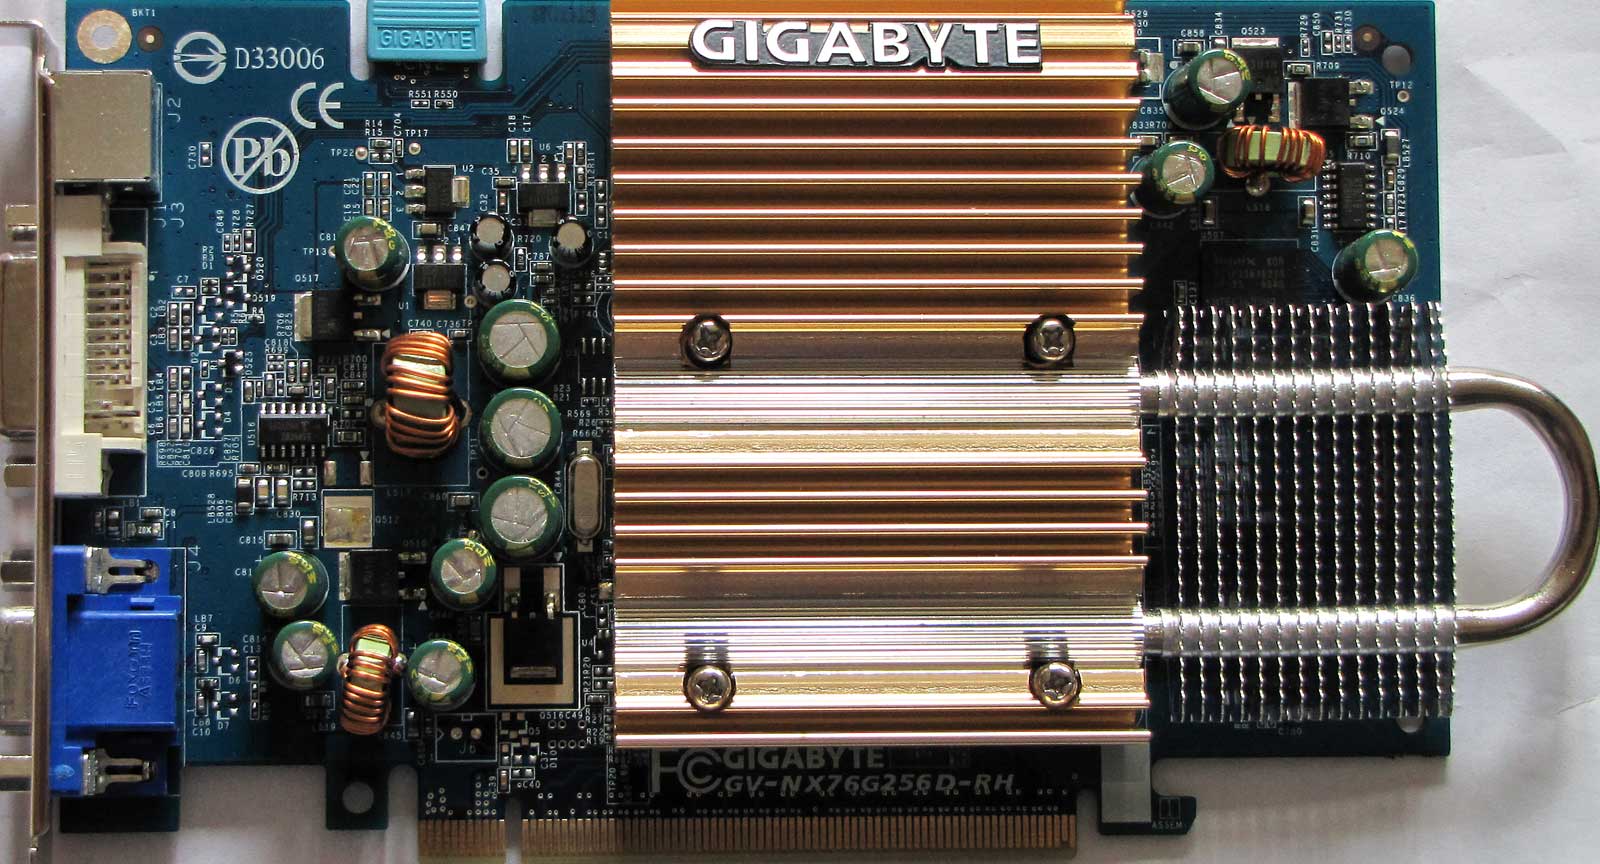 Gigabyte gv r4350c 512i driver for mac